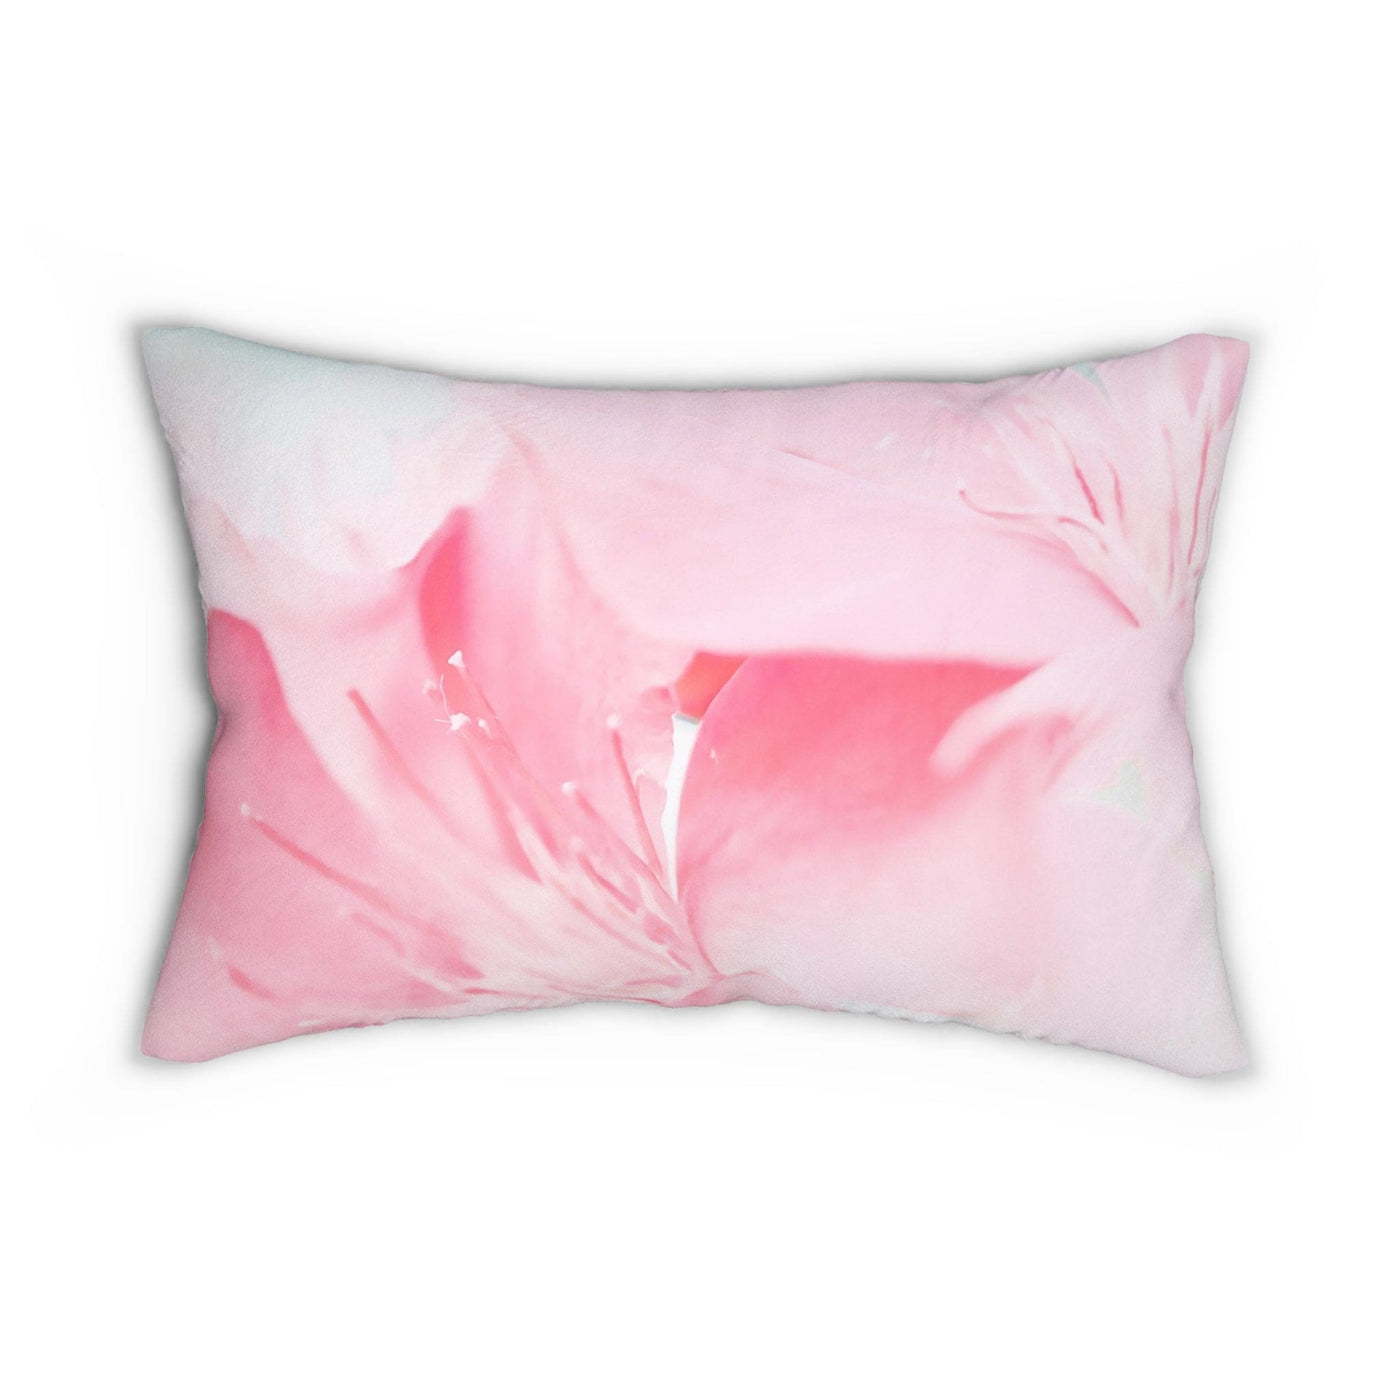 Decorative Lumbar Throw Pillow - Pink Flower Bloom Peaceful Spring Nature